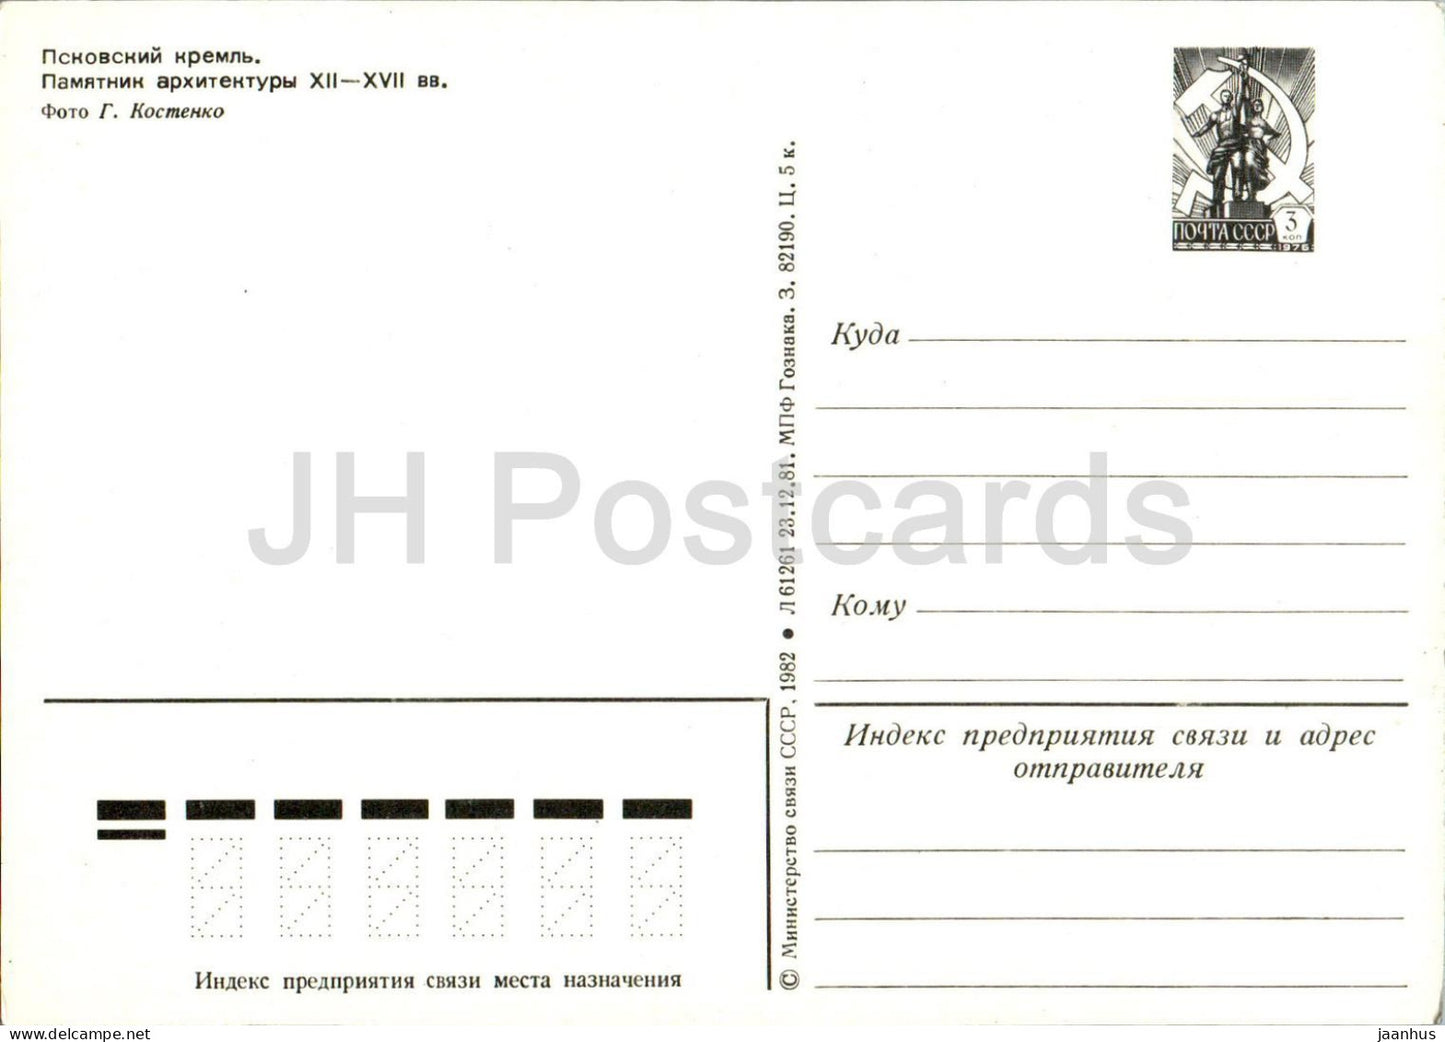 Pskov - Pskov Kremlin - entier postal - 1982 - Russie URSS - inutilisé 